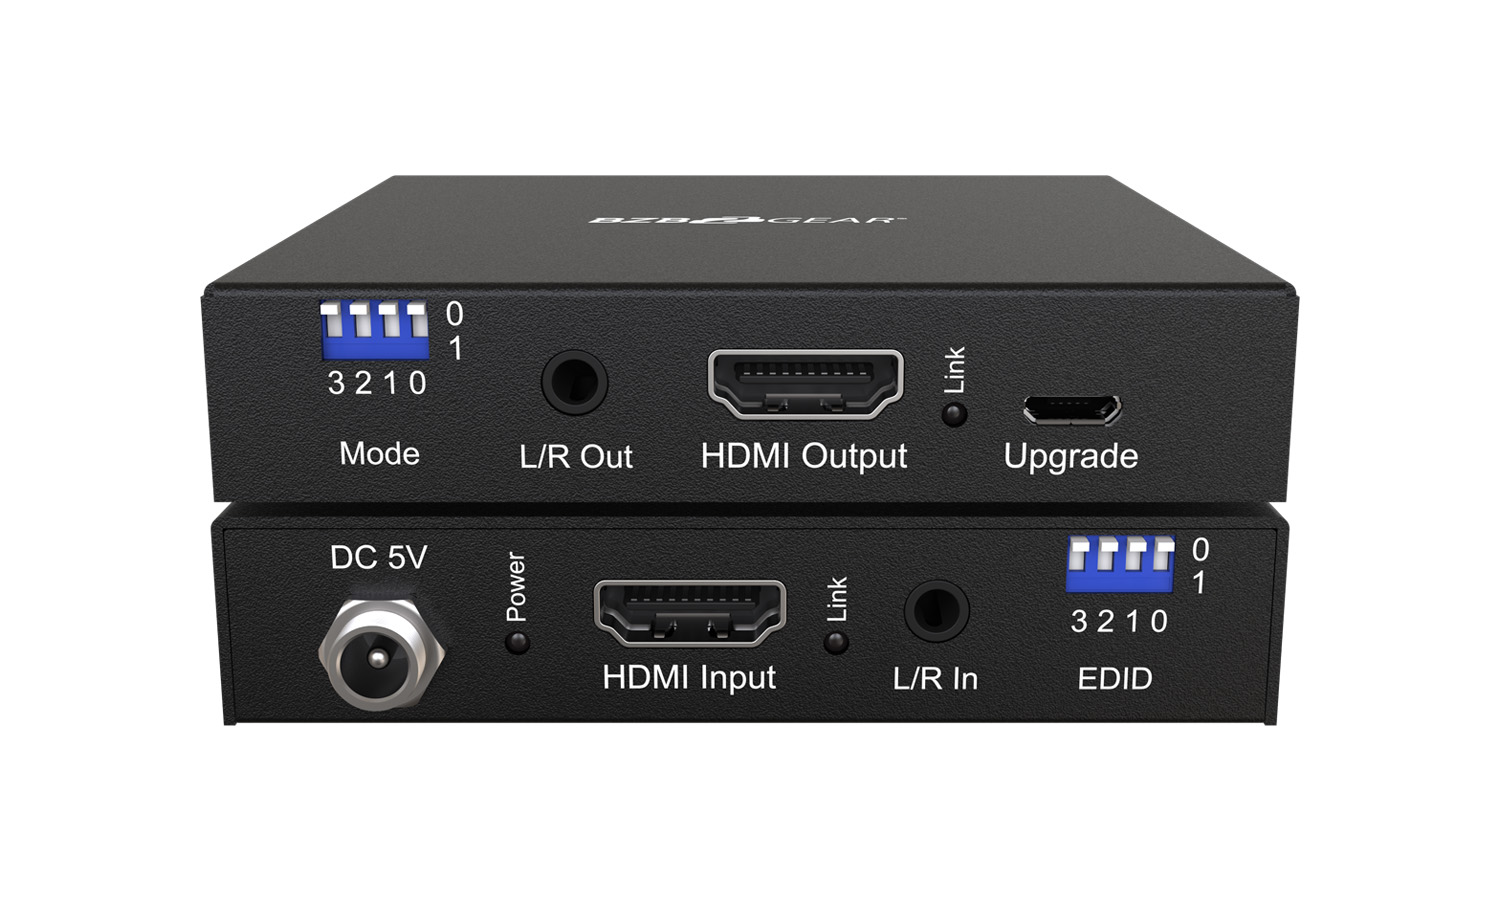 BG-AEE 4K 18Gbps UHD HDMI Signal Fixer and Audio Embedder/De-embedder by BZBGEAR